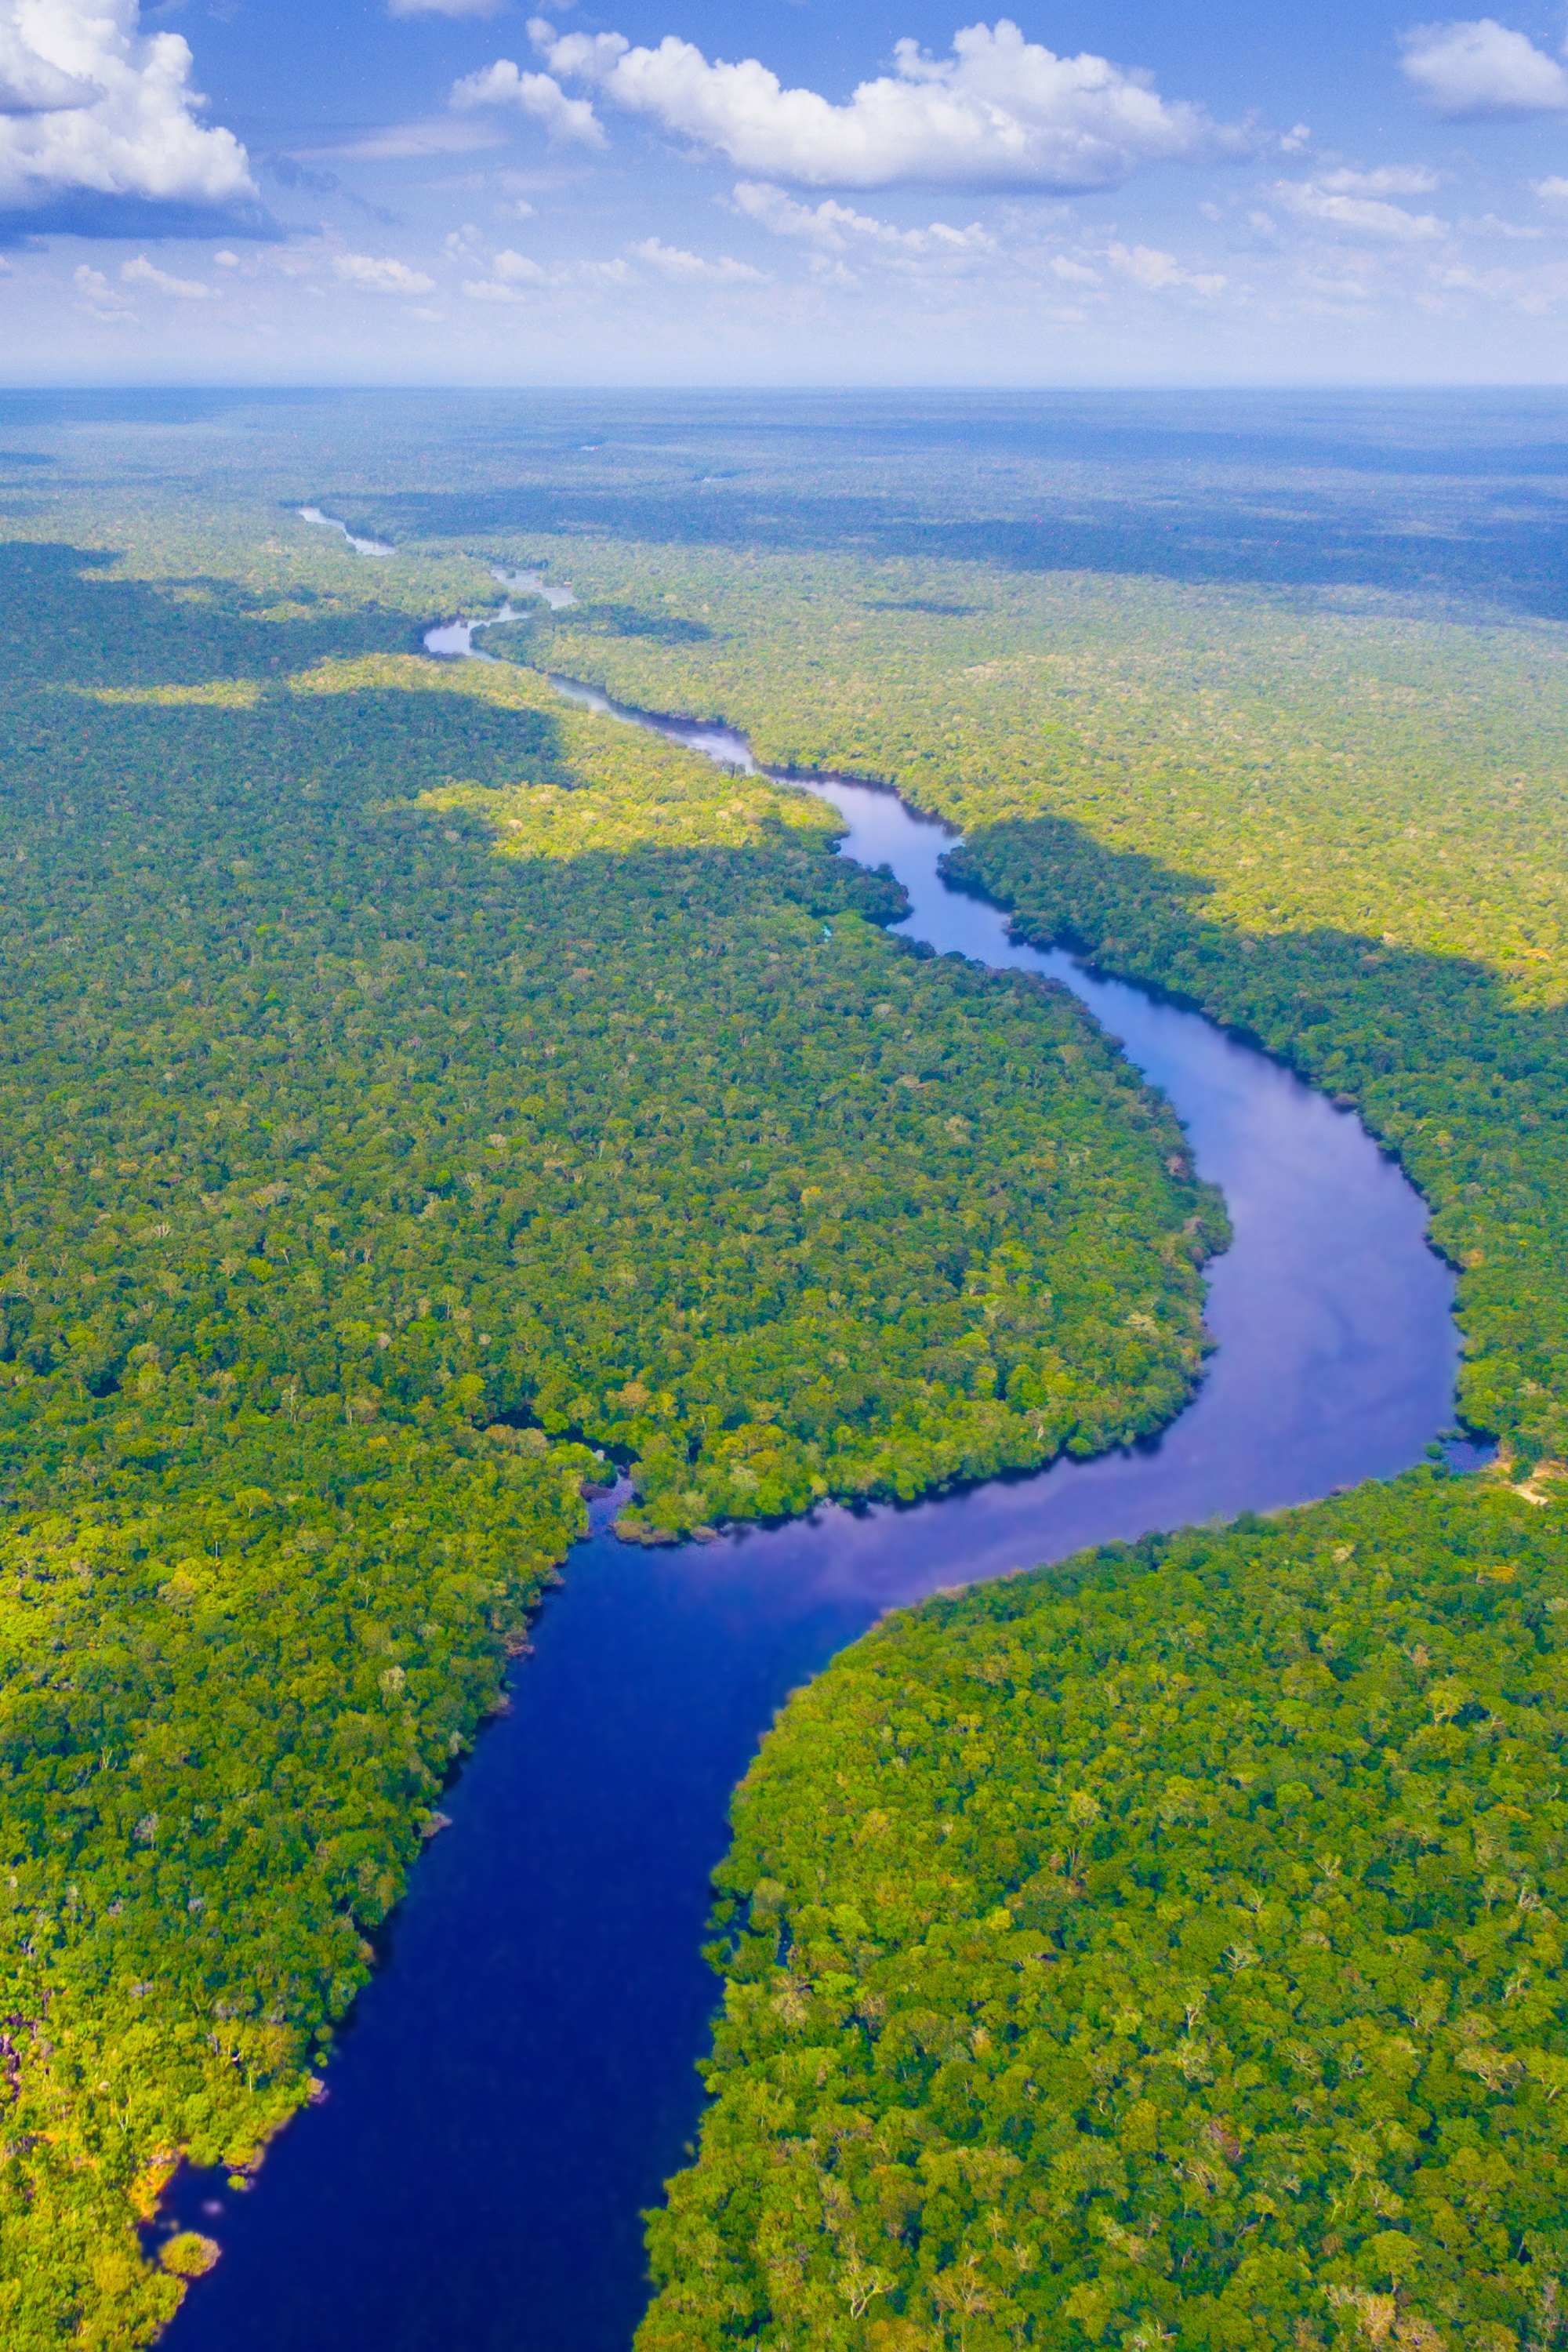 亚马逊热带雨林,面积约550万平方公里,占全球热带雨林一半以上,排第二